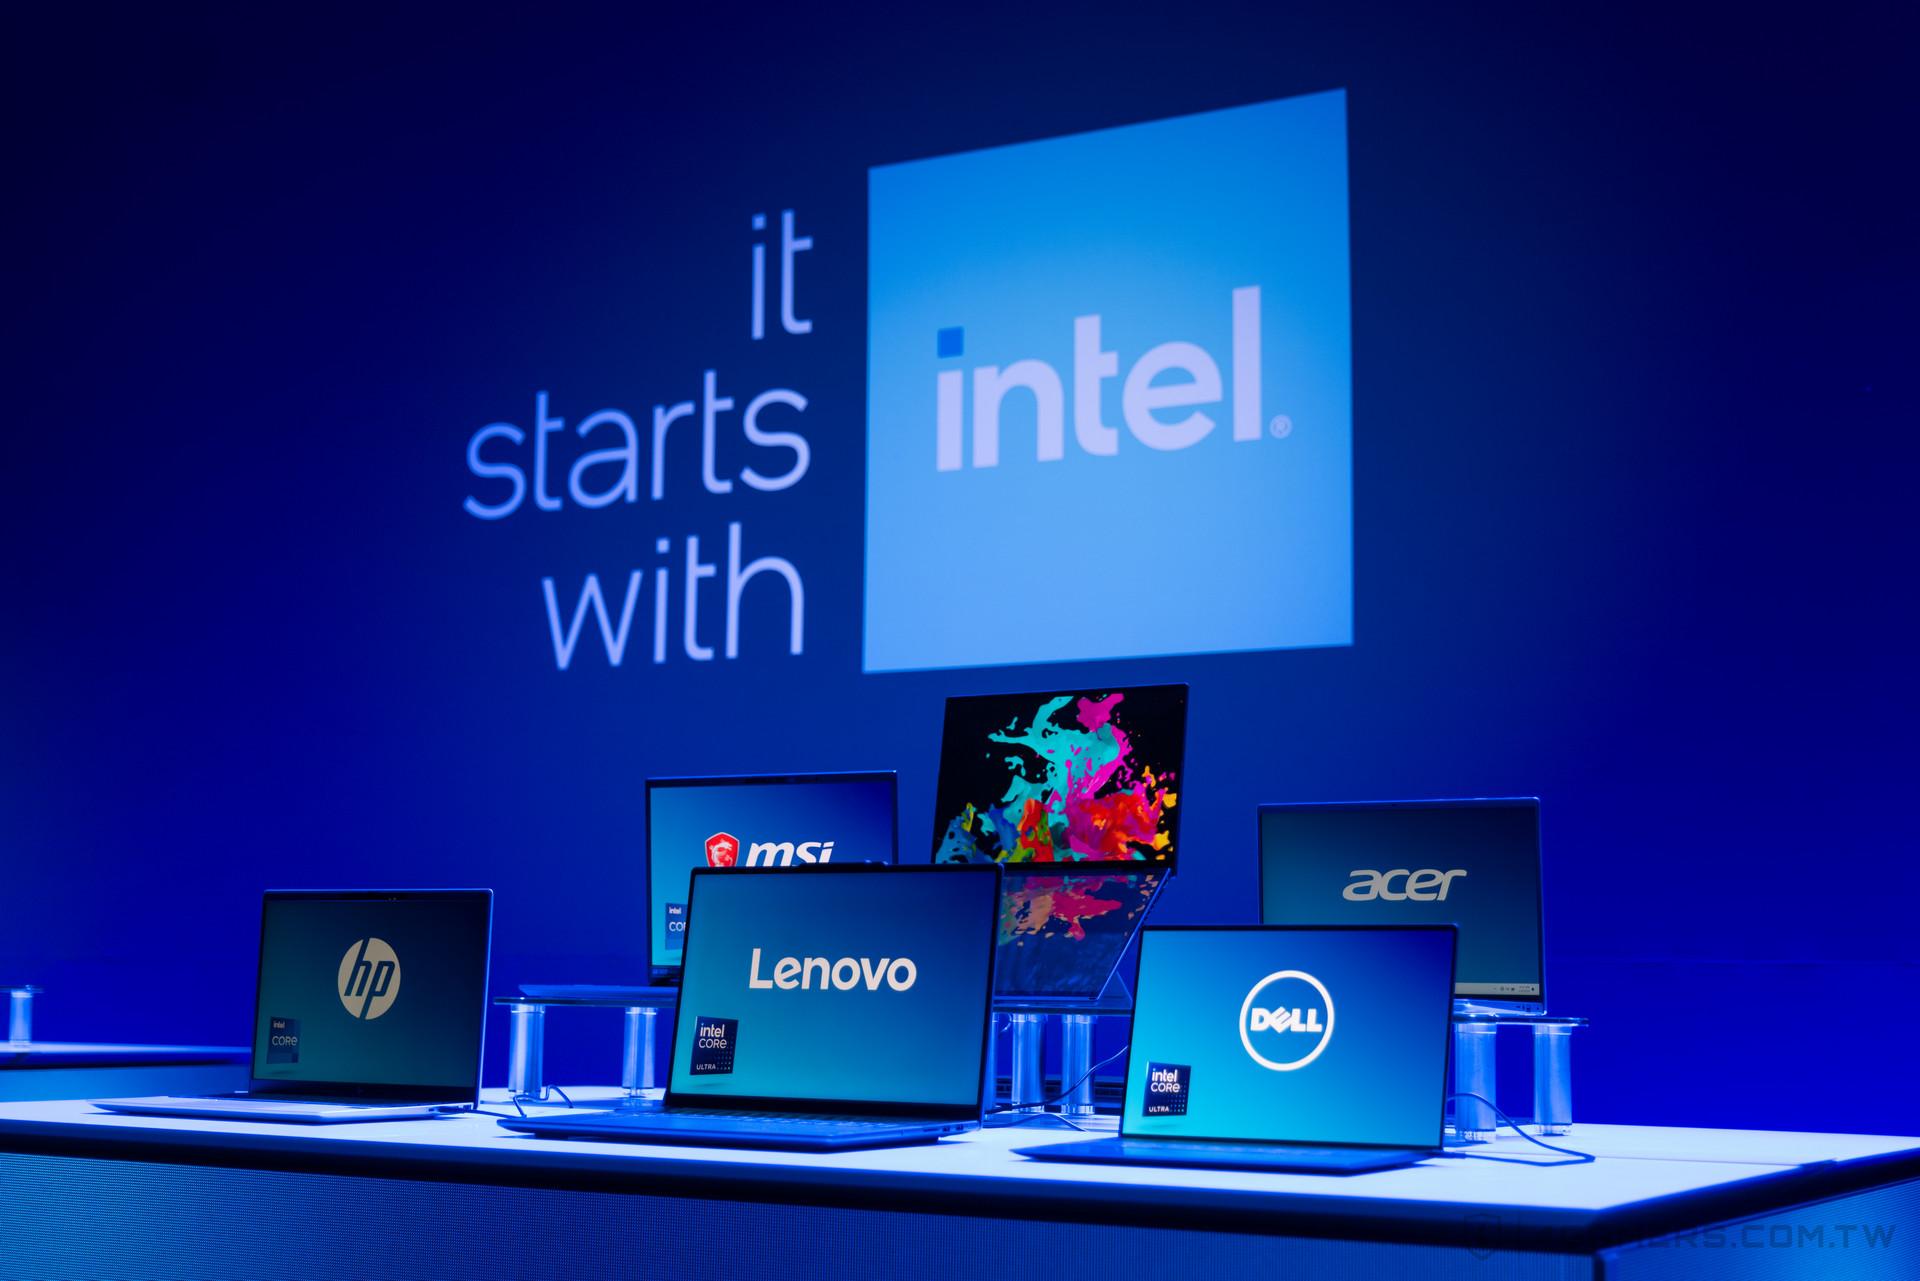 Phó chủ tịch điều hành Intel: “AI PC sẽ dẫn đến một kỷ nguyên máy tính không cần chuột và bàn phím trong tương lai”- Ảnh 1.